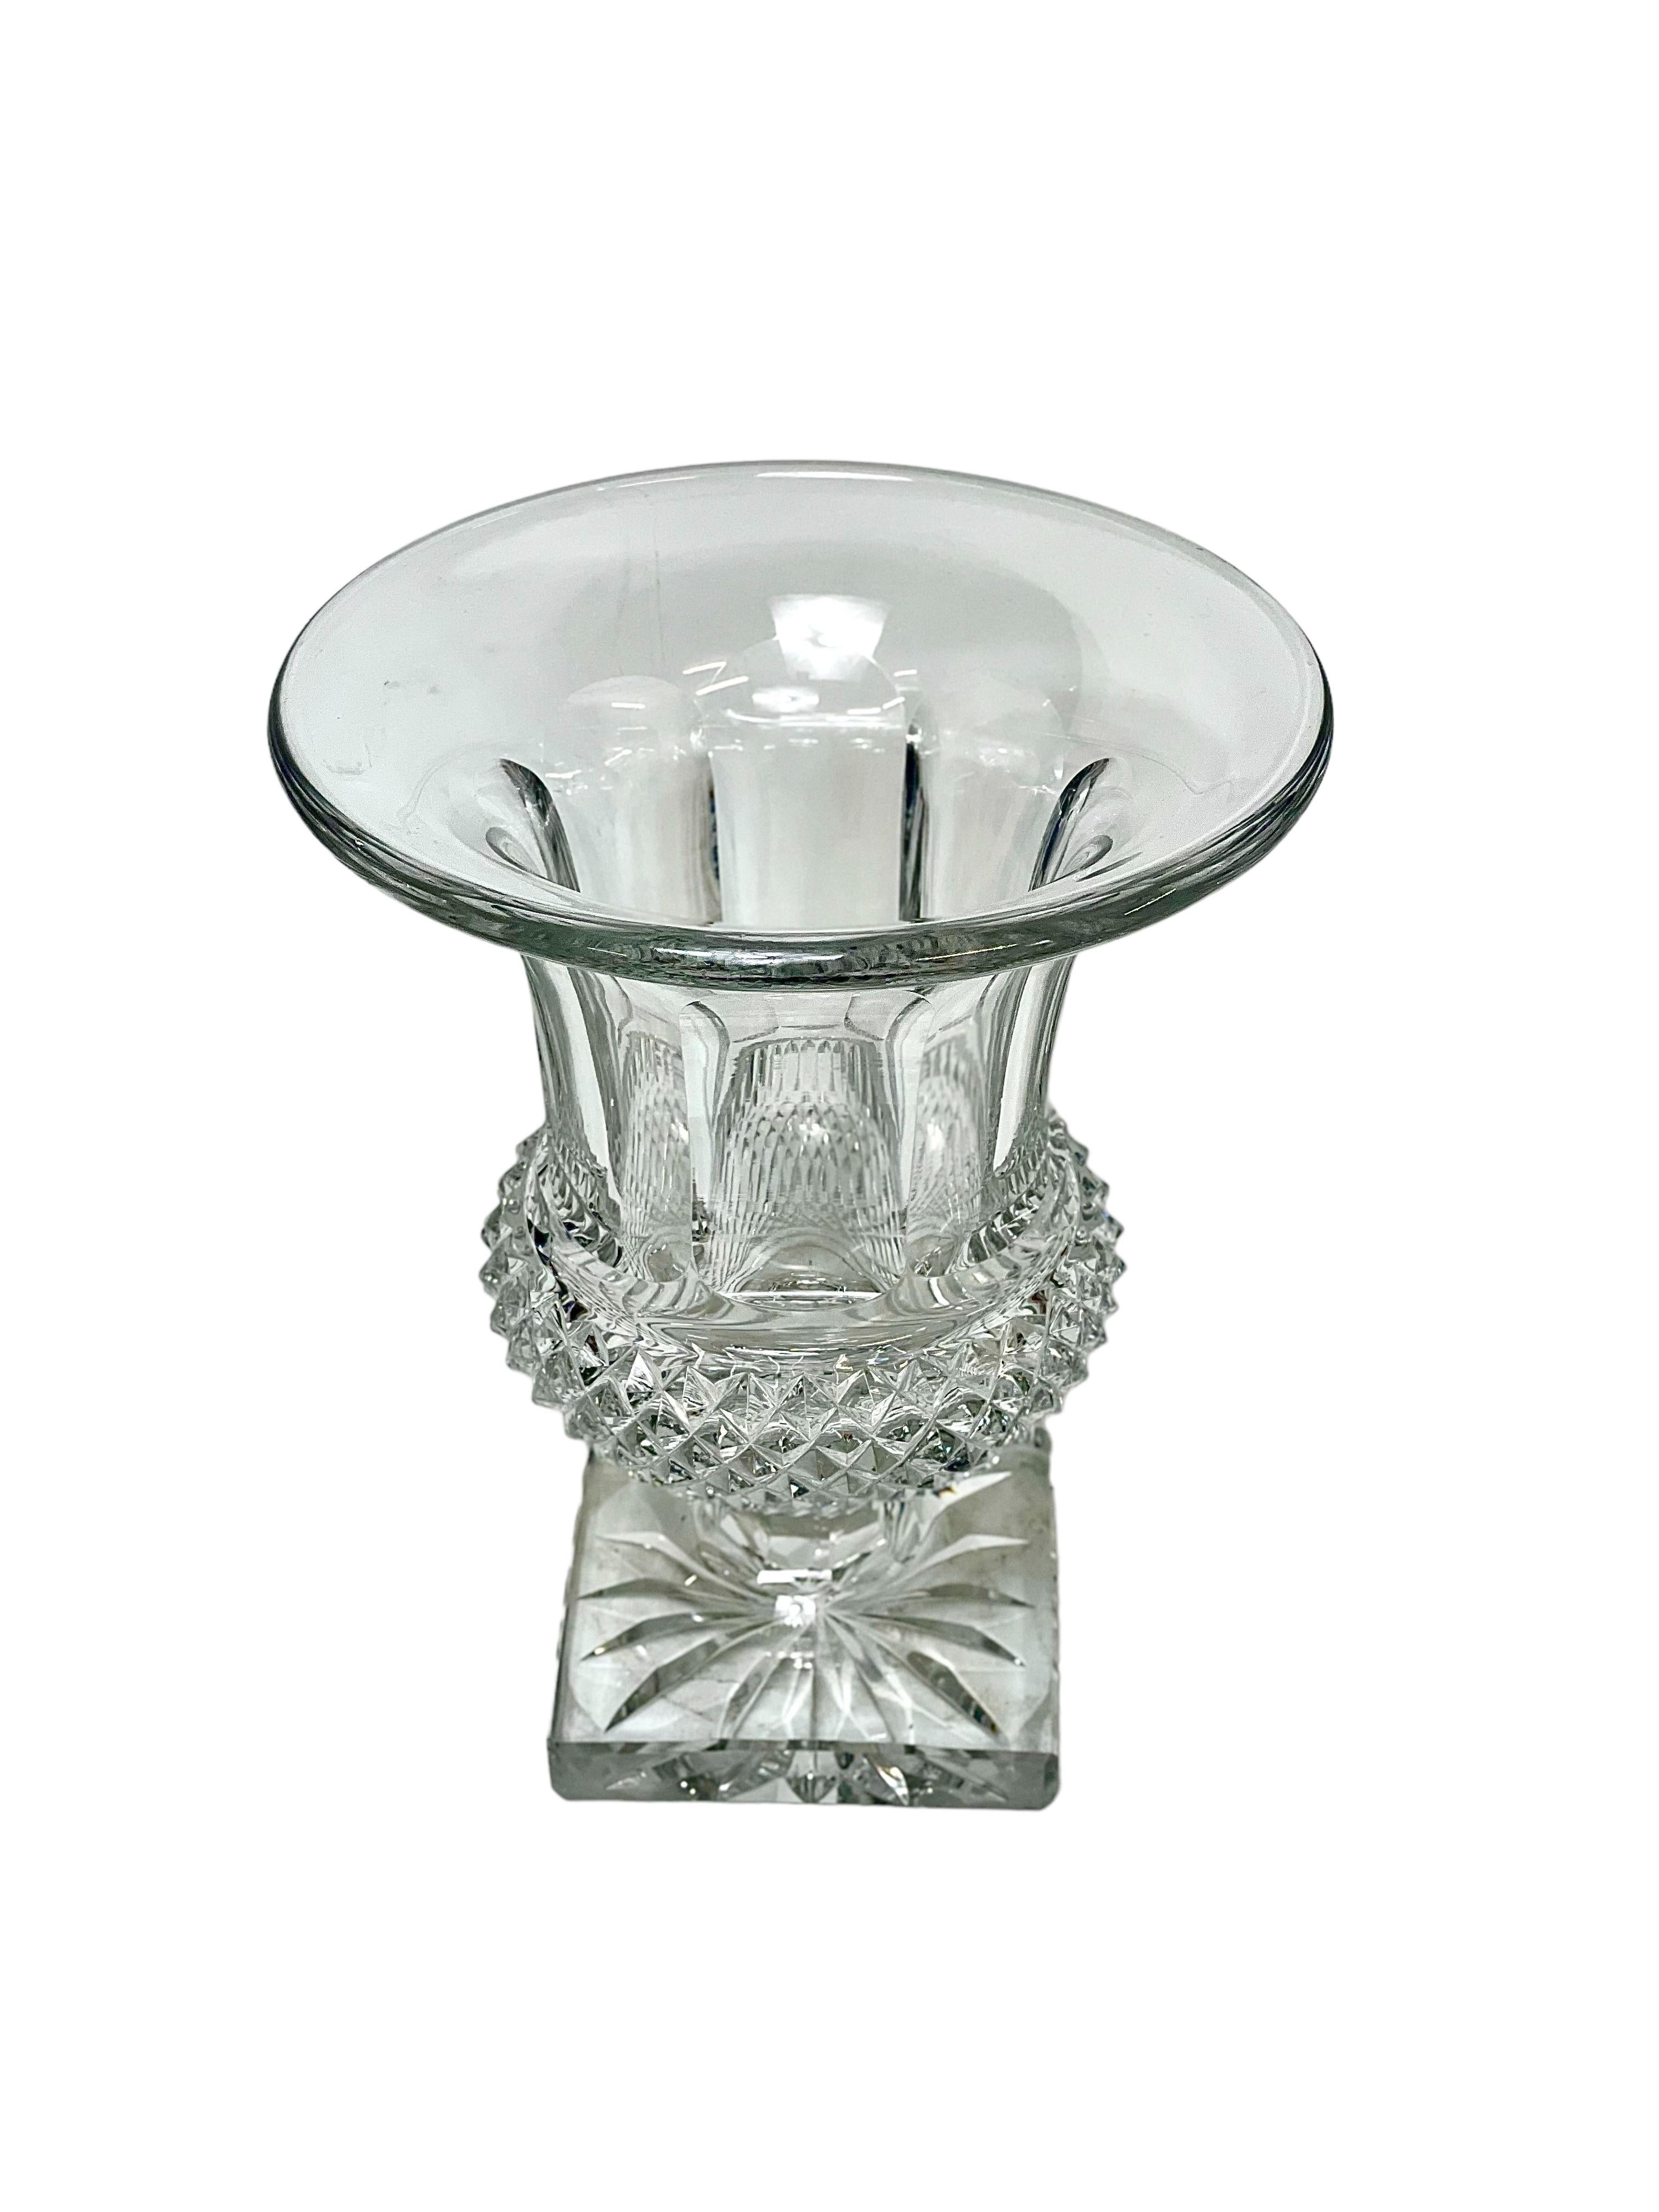 Vase de style Médicis en cristal taillé classique de Saint Louis, dont la partie inférieure est taillée en pointes de diamant à larges facettes et la partie supérieure élégamment cannelée. Le vase repose sur une base carrée substantielle, taillée en